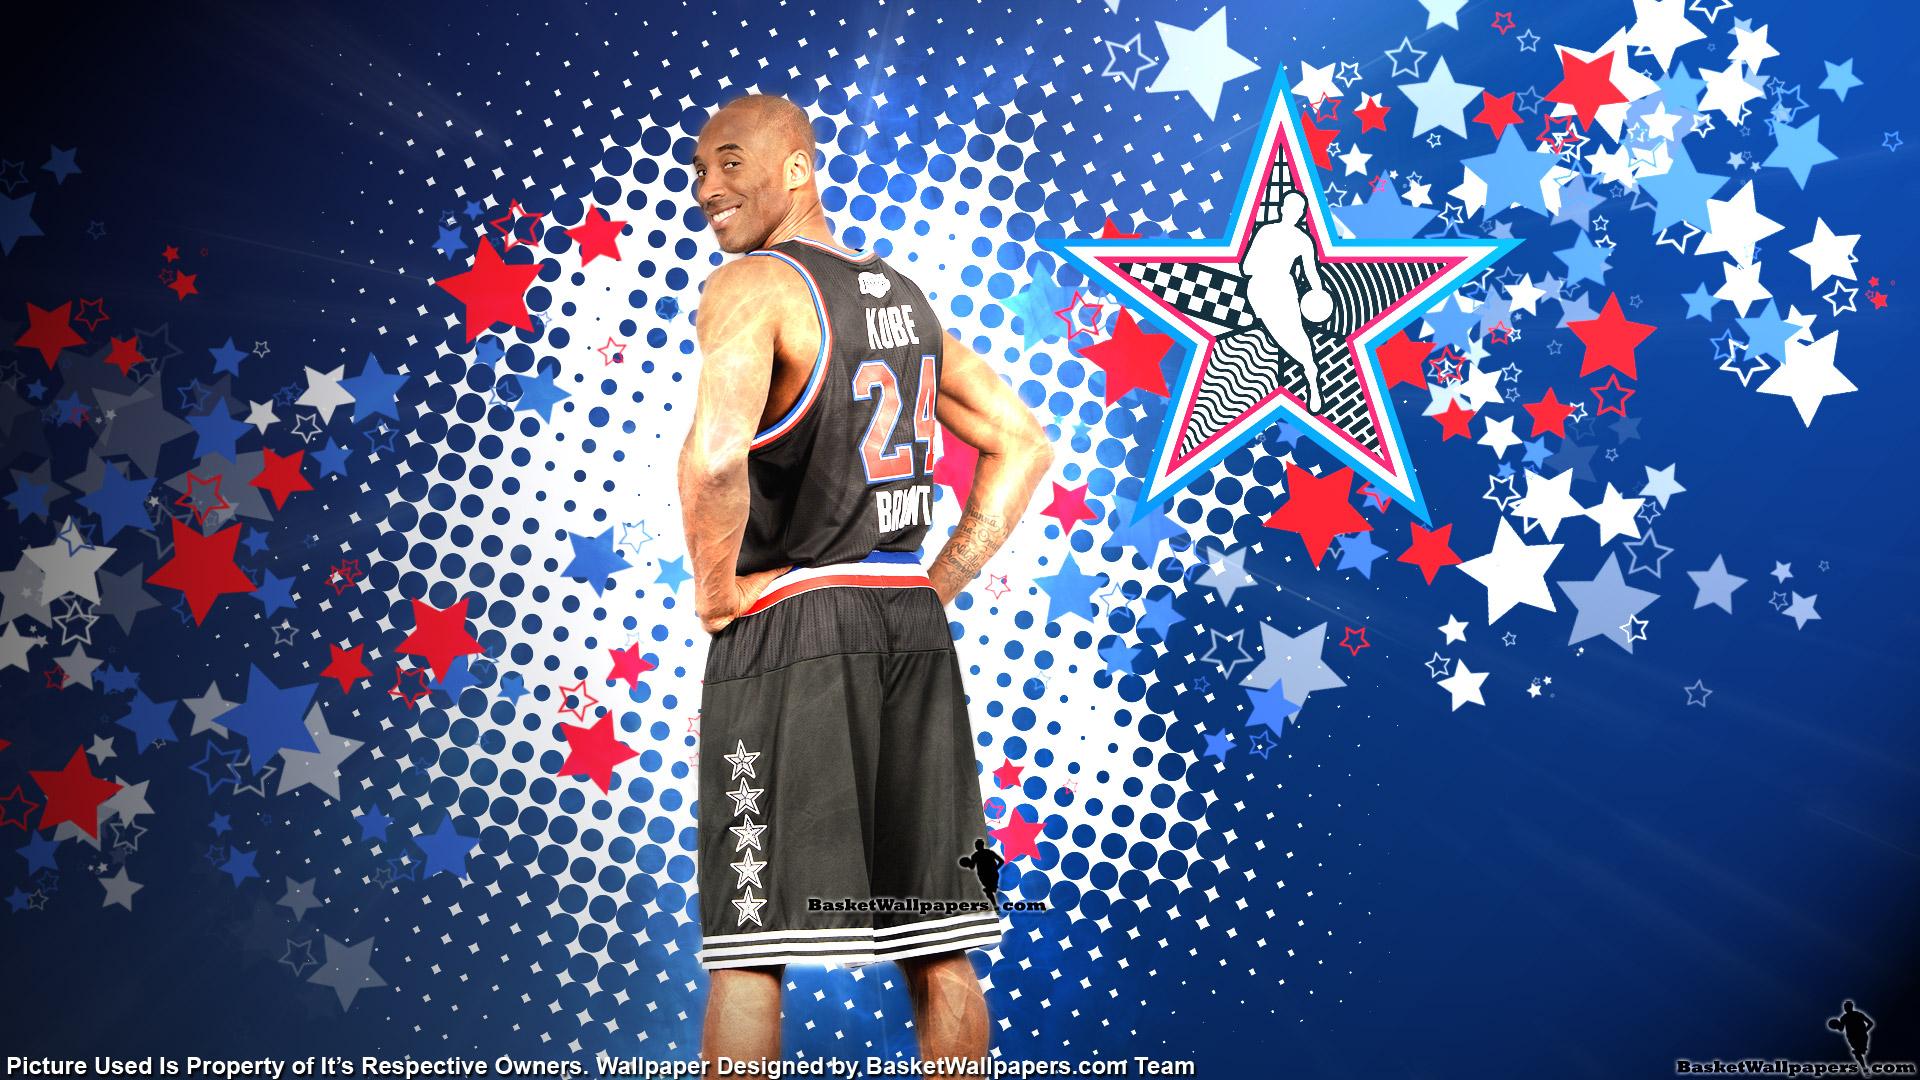 Download NBA All Star Wallpaper Basketball Wallpaper at 1920x1080